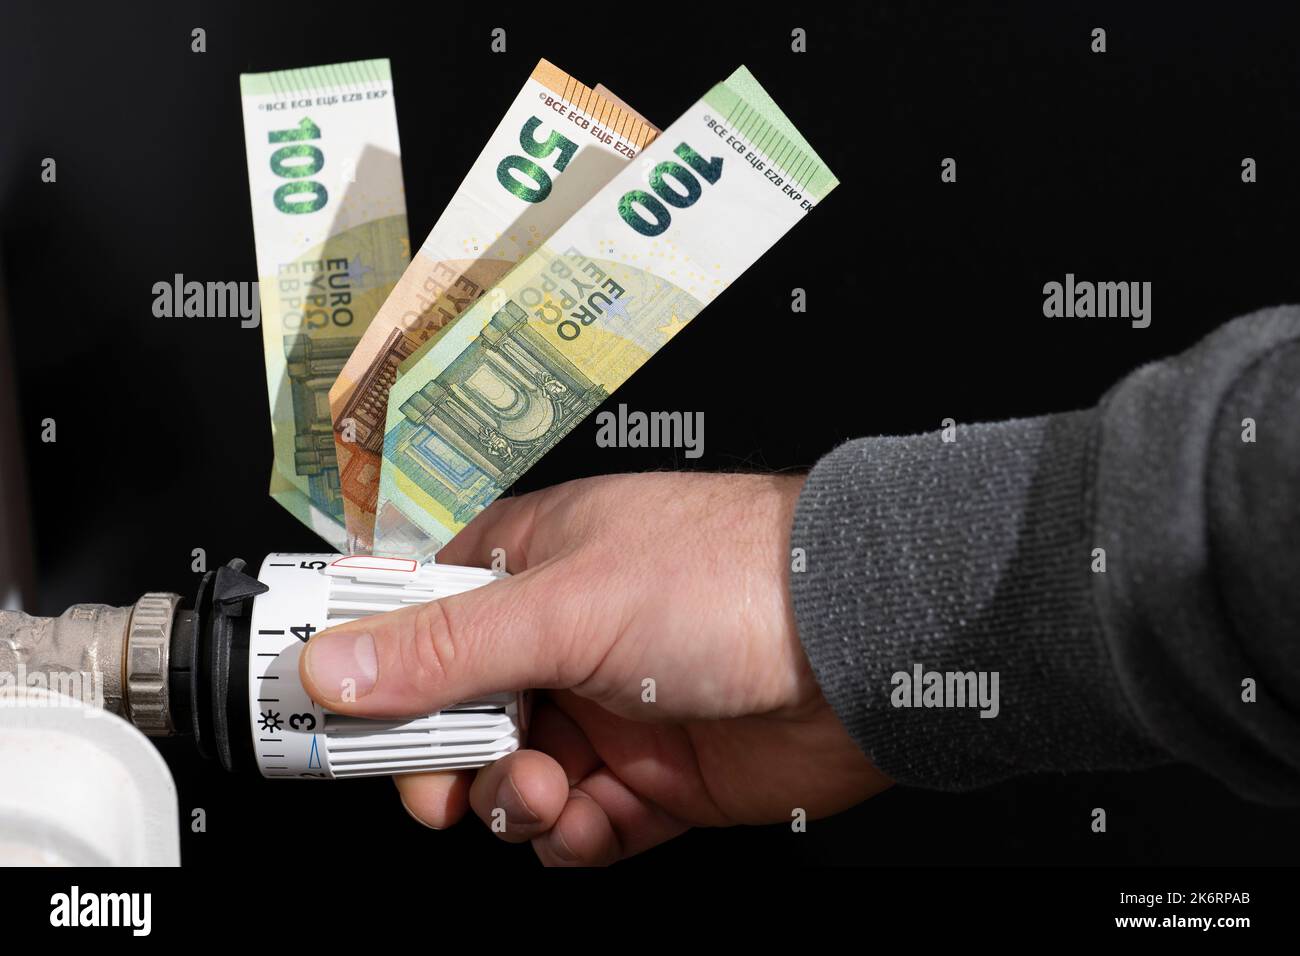 Le thermostat de chauffage, équipé de billets en euros, est ajusté par les mains des hommes Banque D'Images